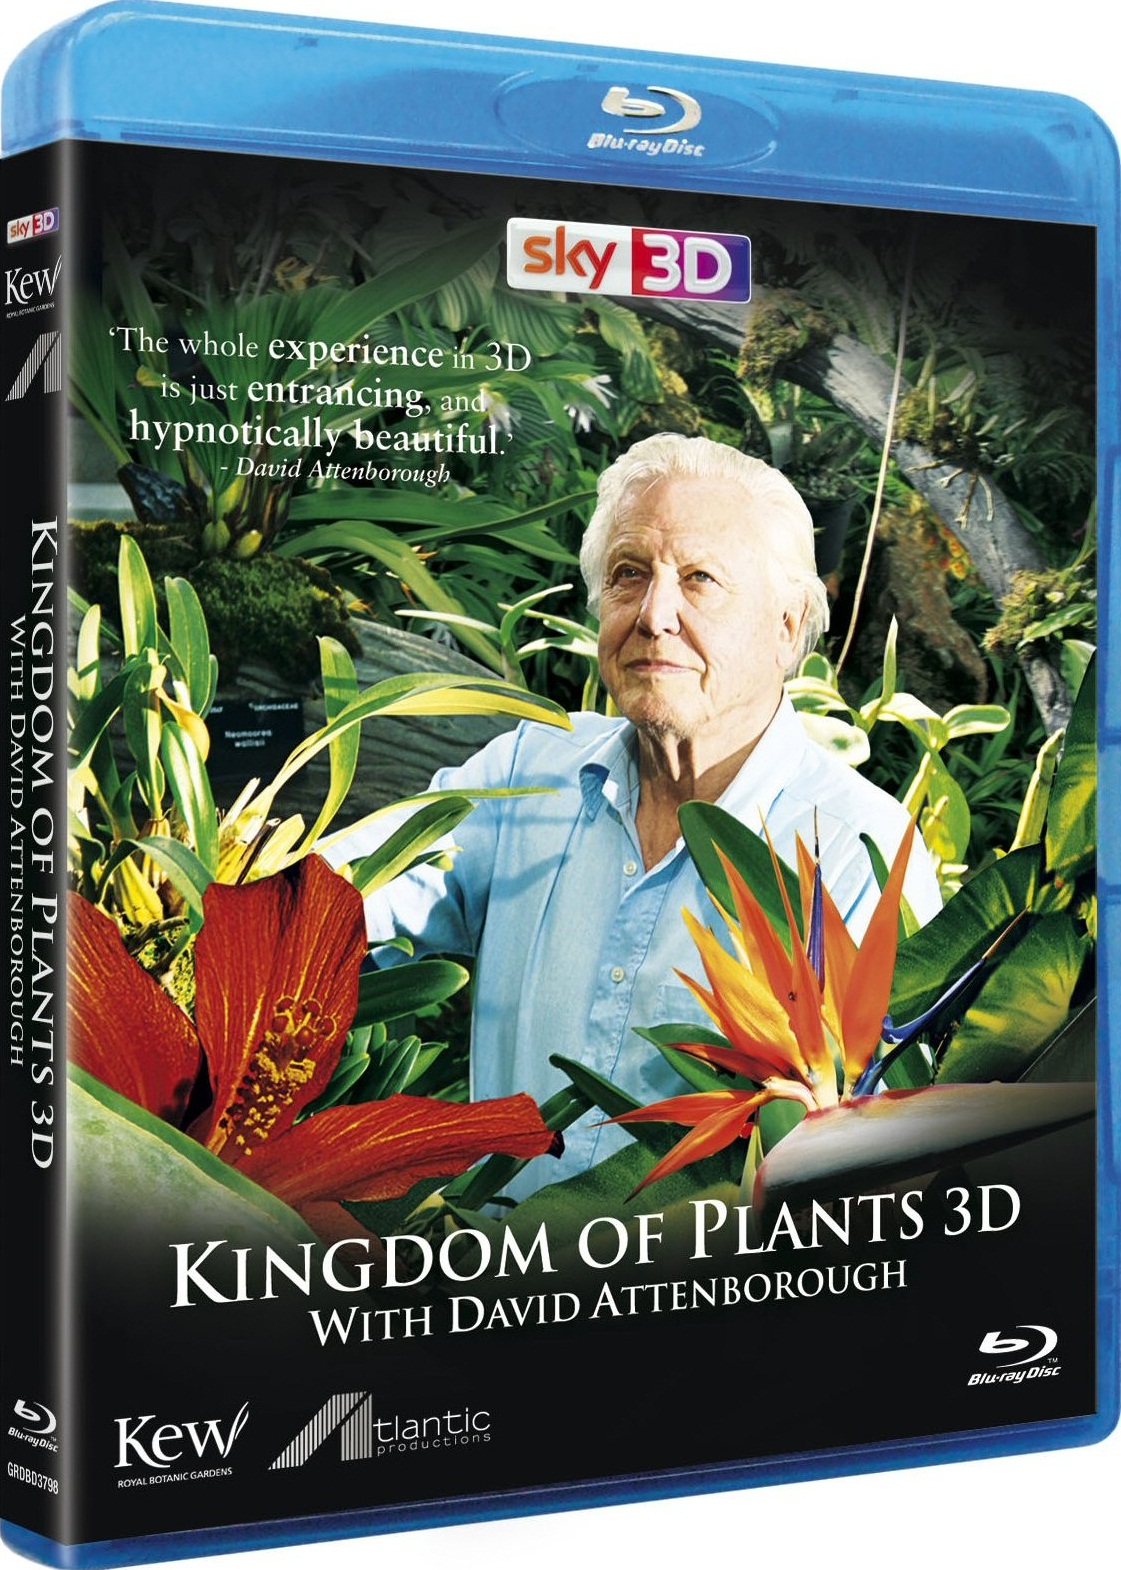 [植物王国].Kingdom.of.Plants.2012.3D.BluRay.1080p.AVC.DTS-HD.MA.5.1-DIY@Siyolala   43.22G-1.jpg